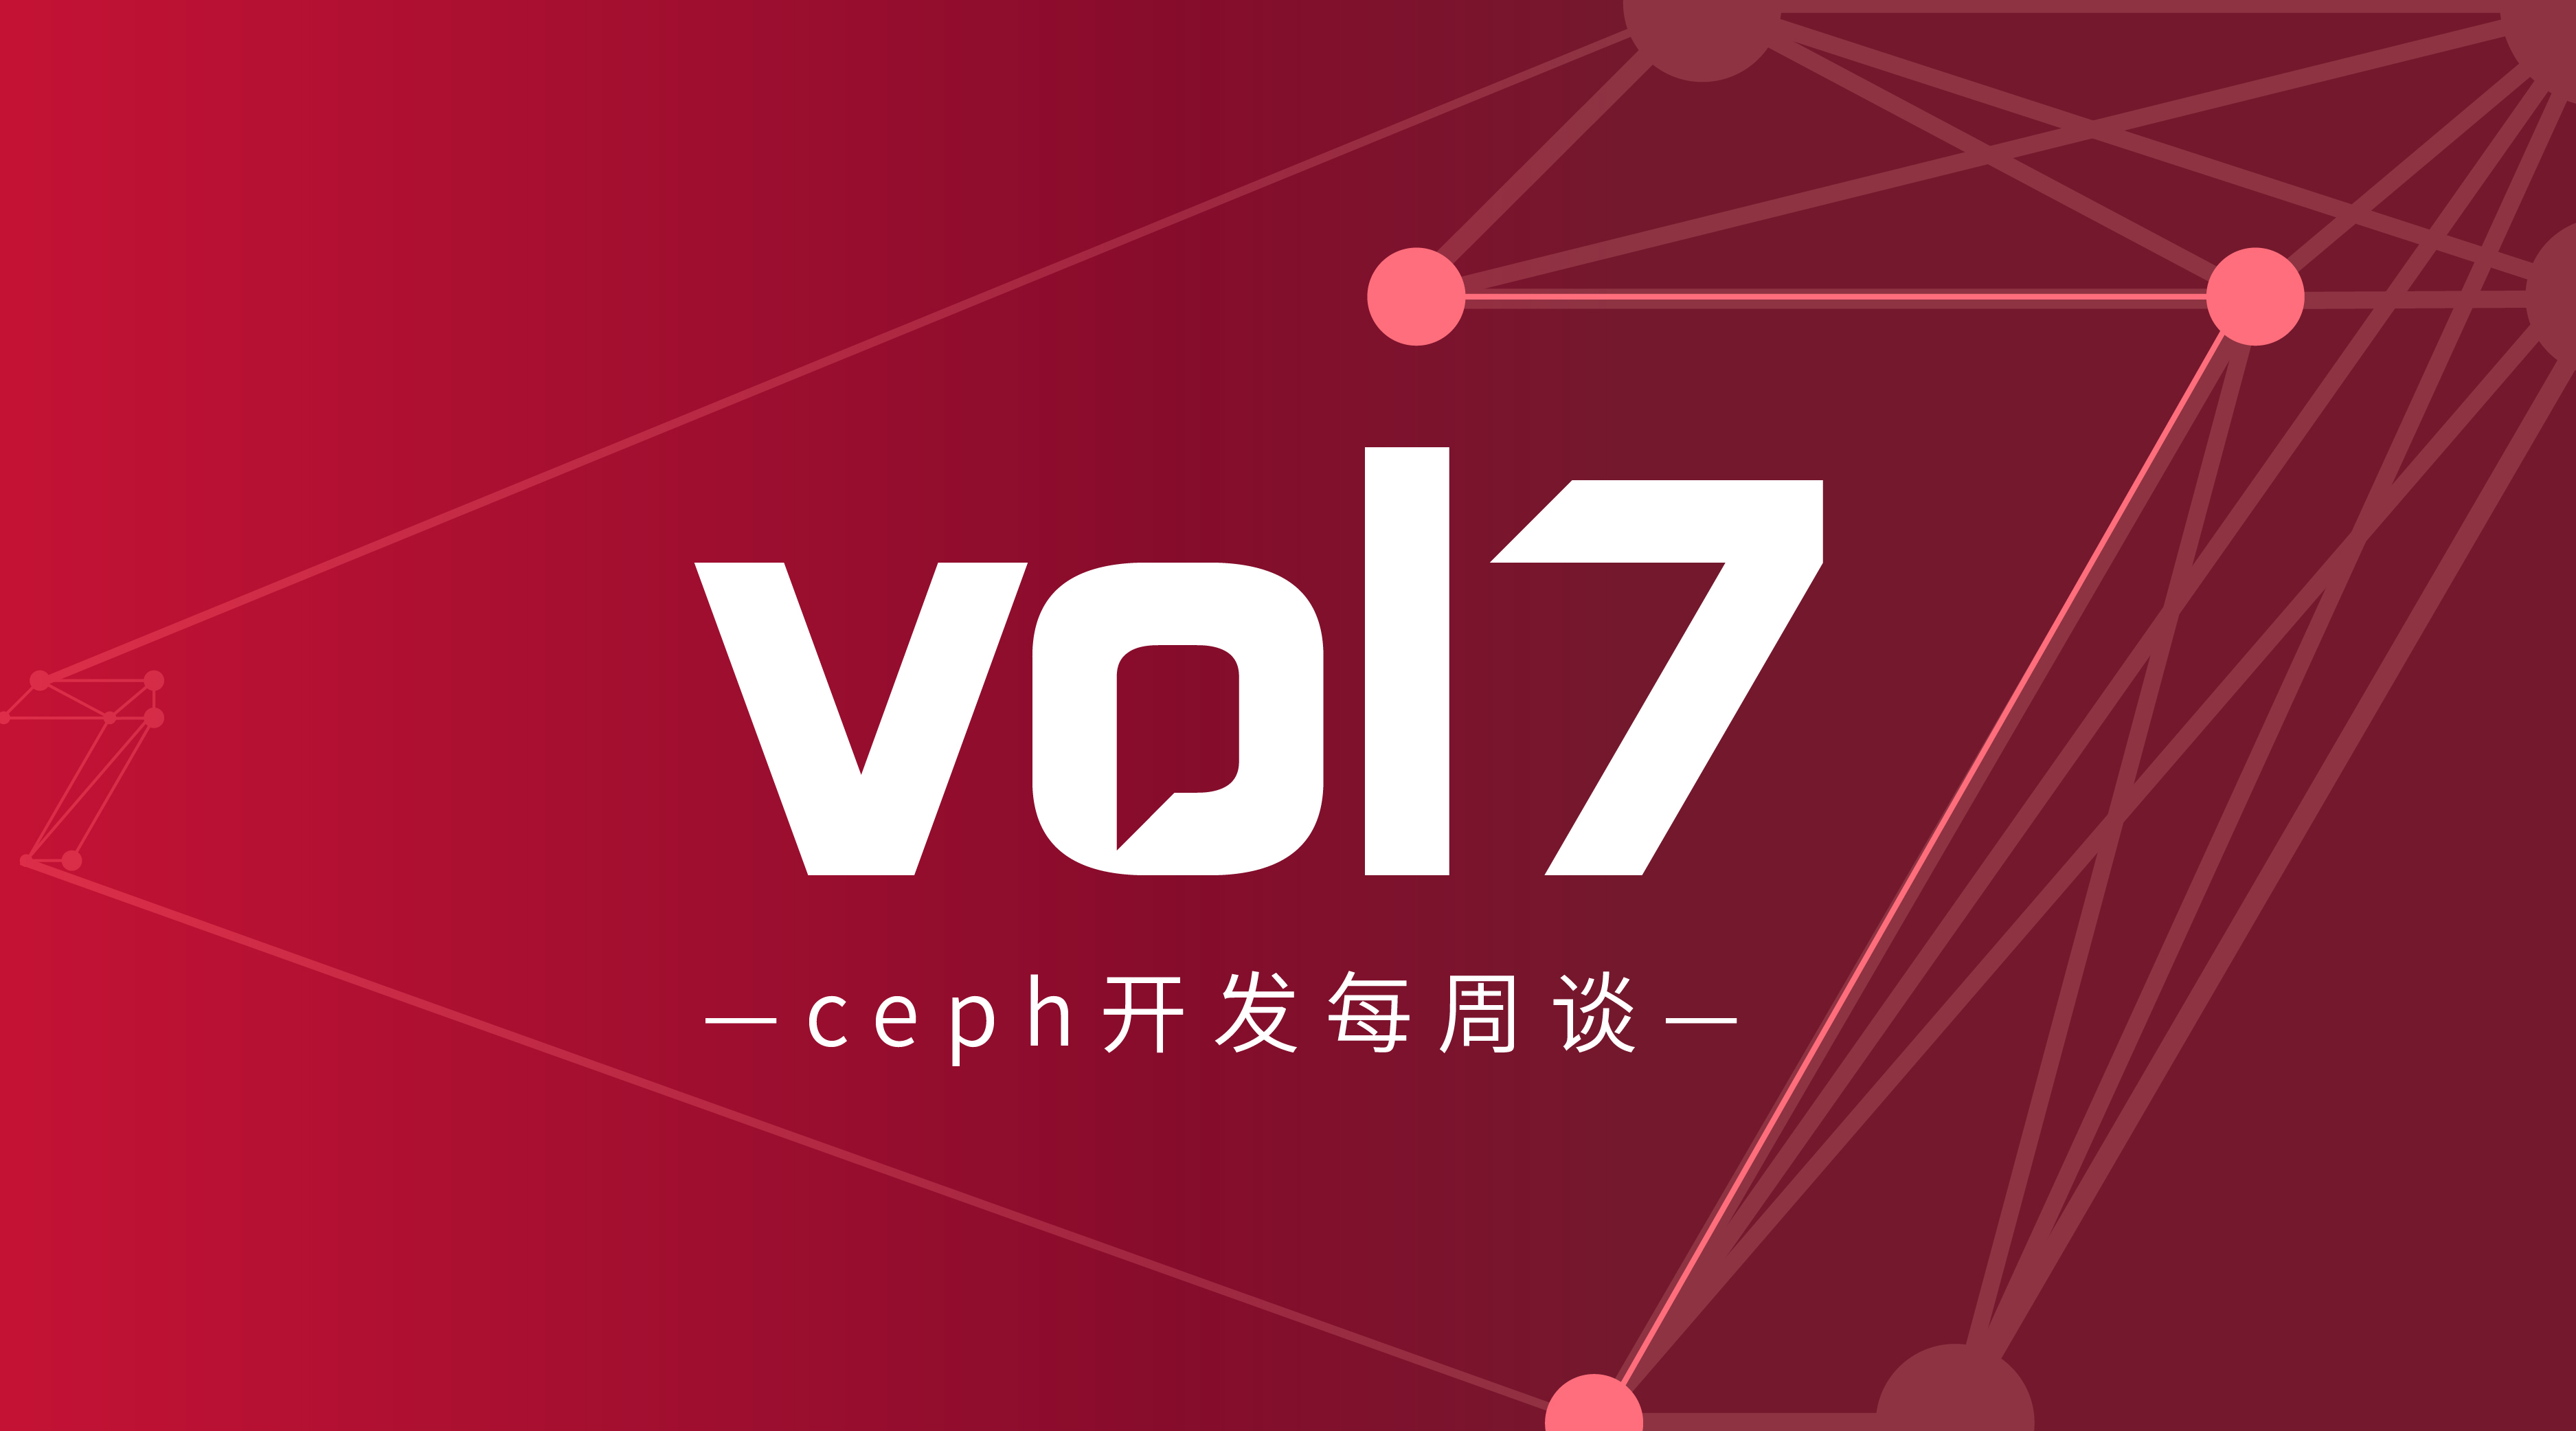 Ceph开发每周谈Vol 7